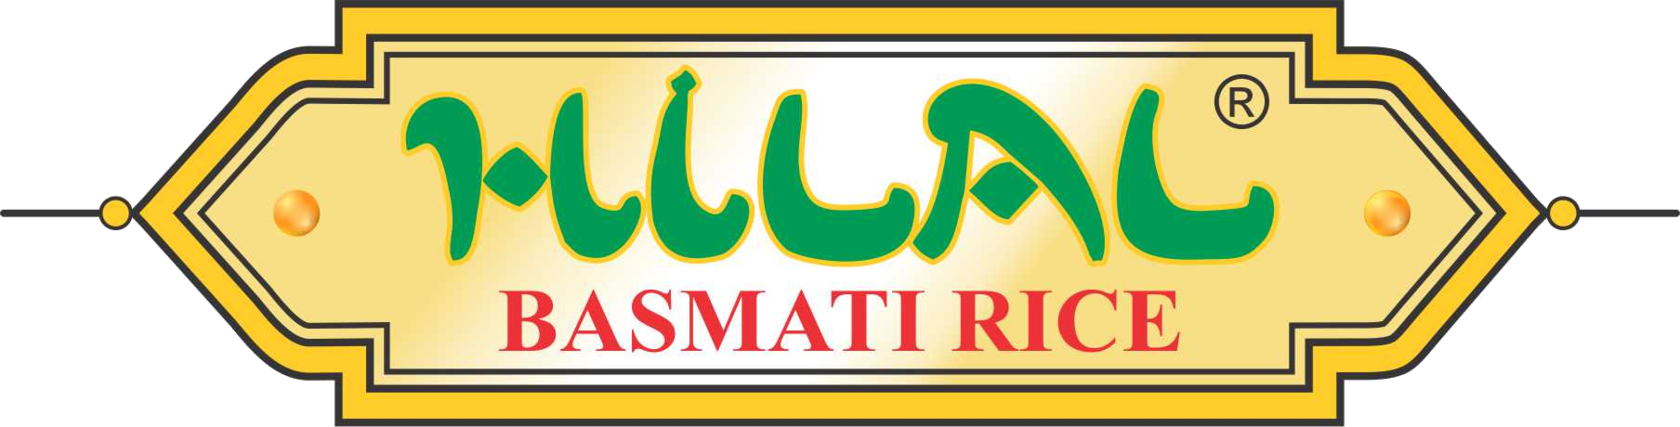 HILAL Basmati rice